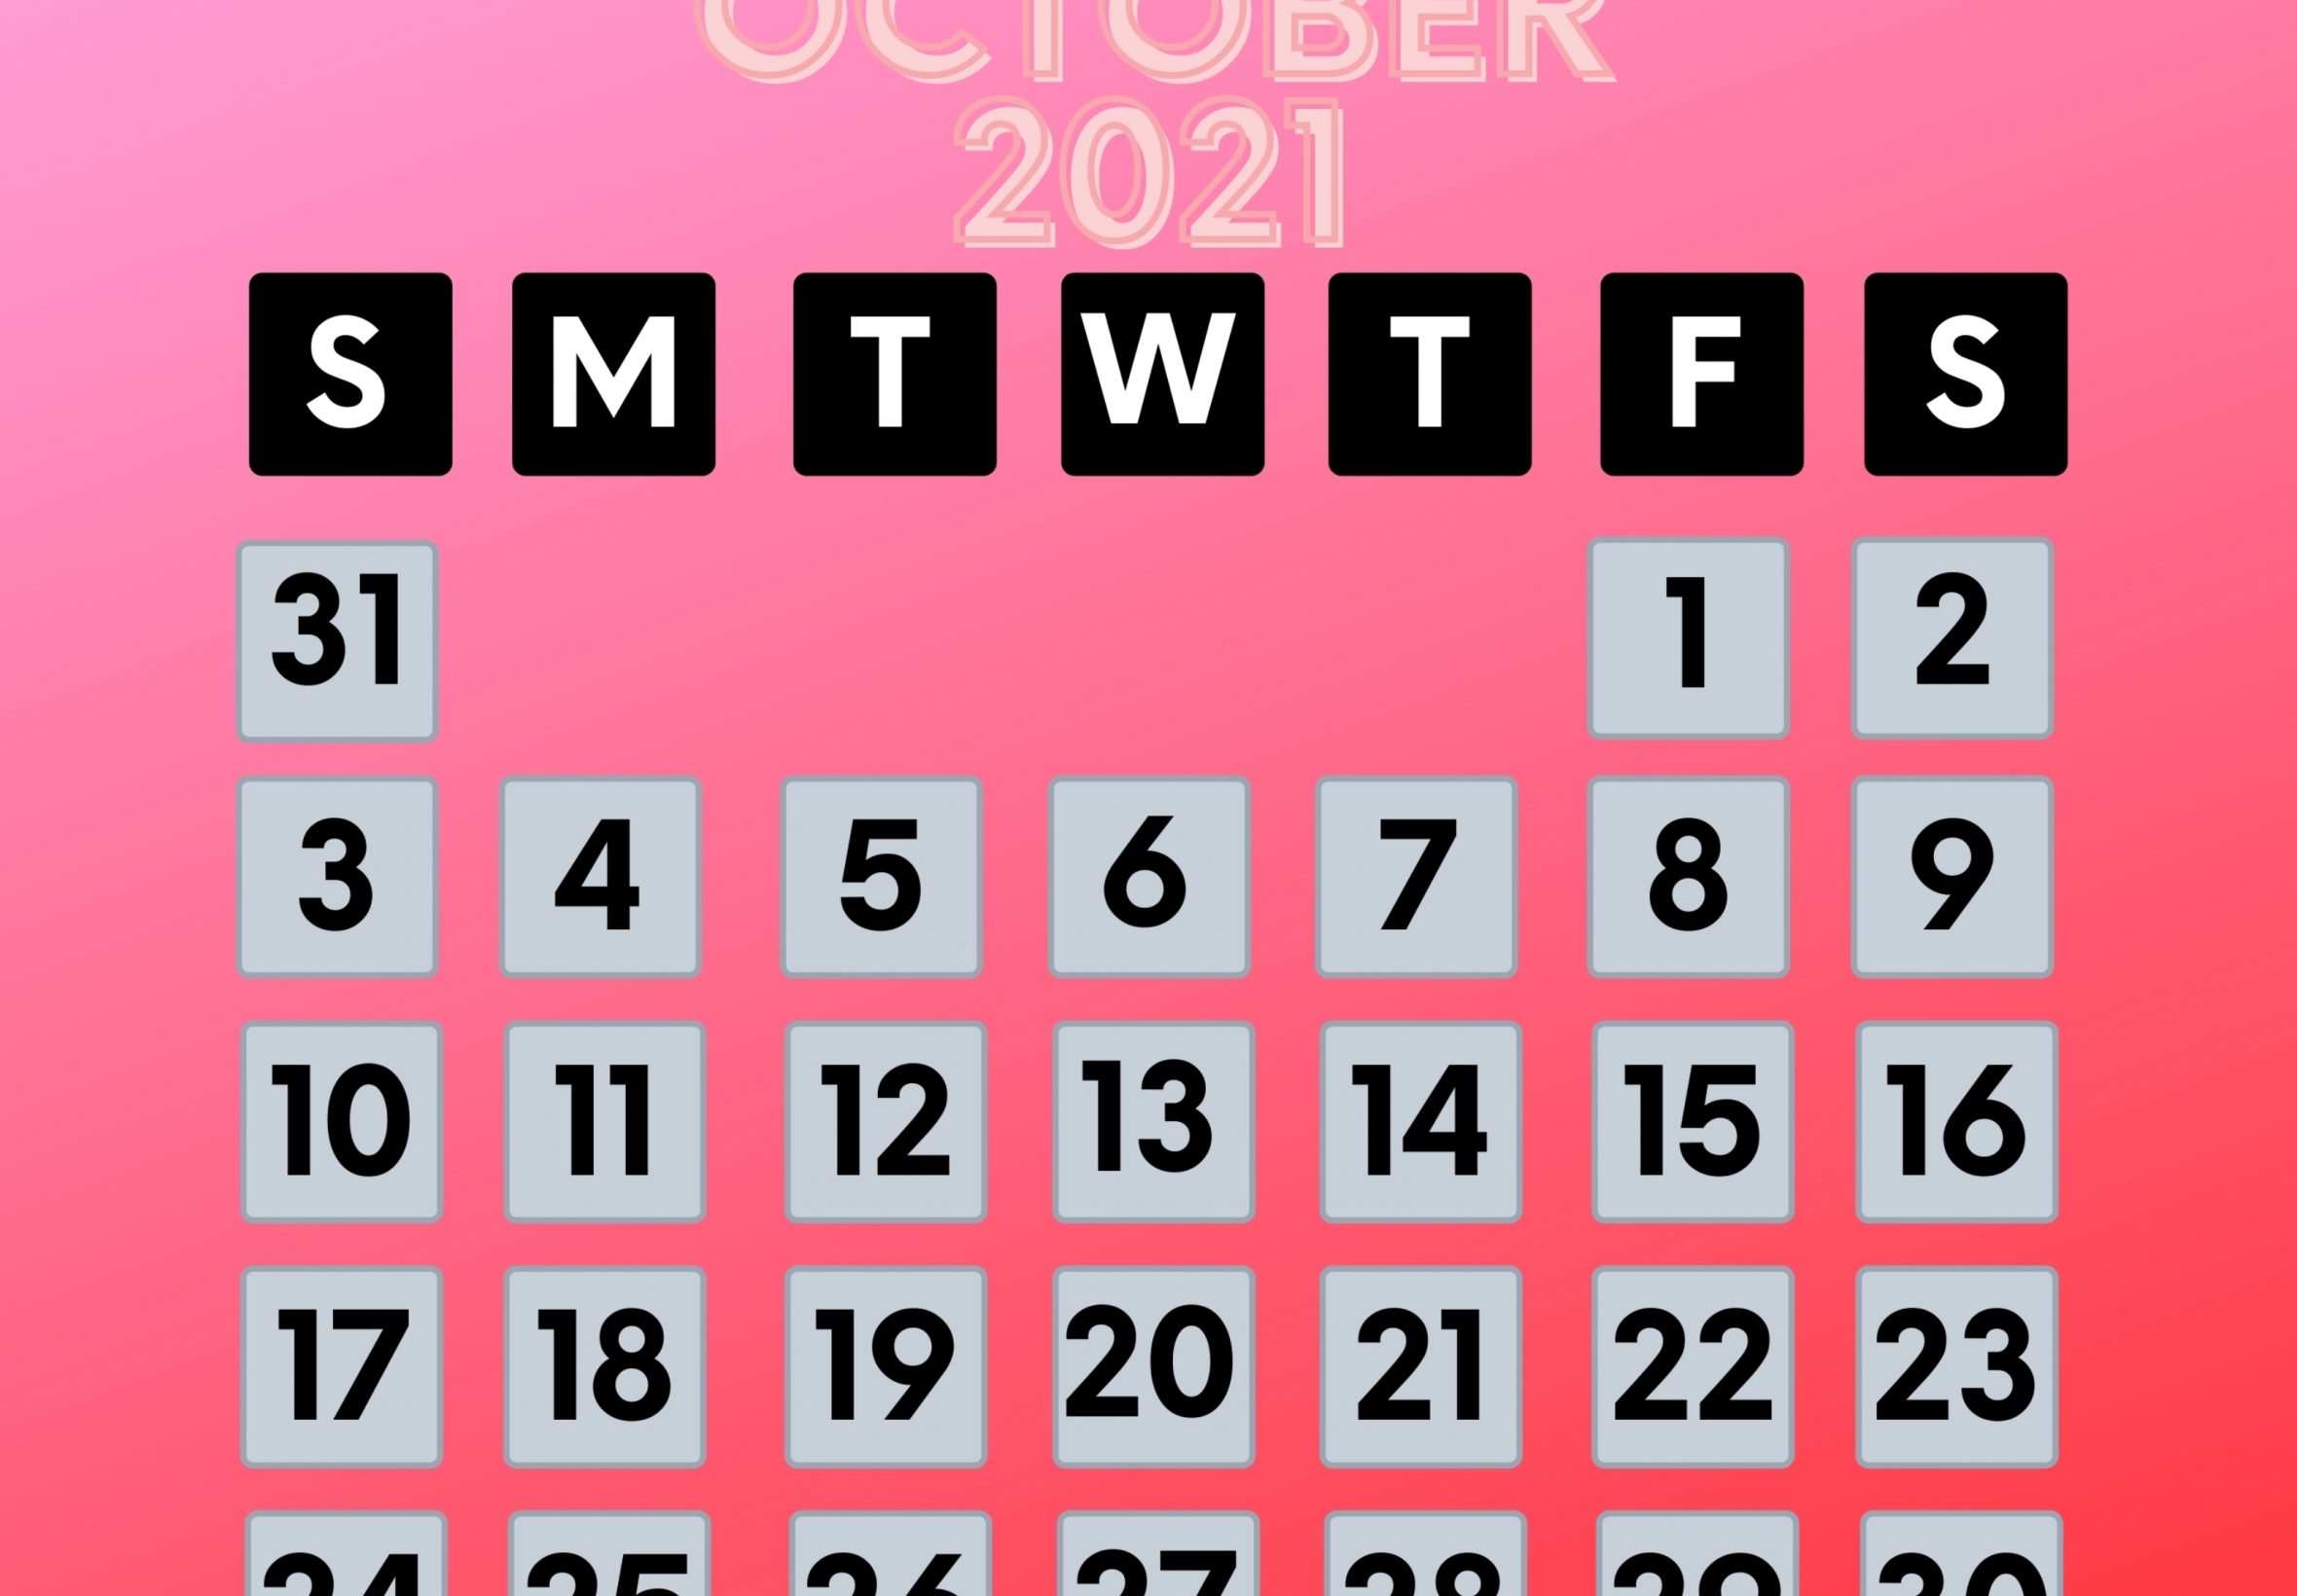 2360x1640 iPad Air wallpaper 4k October 2021 Calendar iPad Wallpaper 2360x1640 pixels resolution